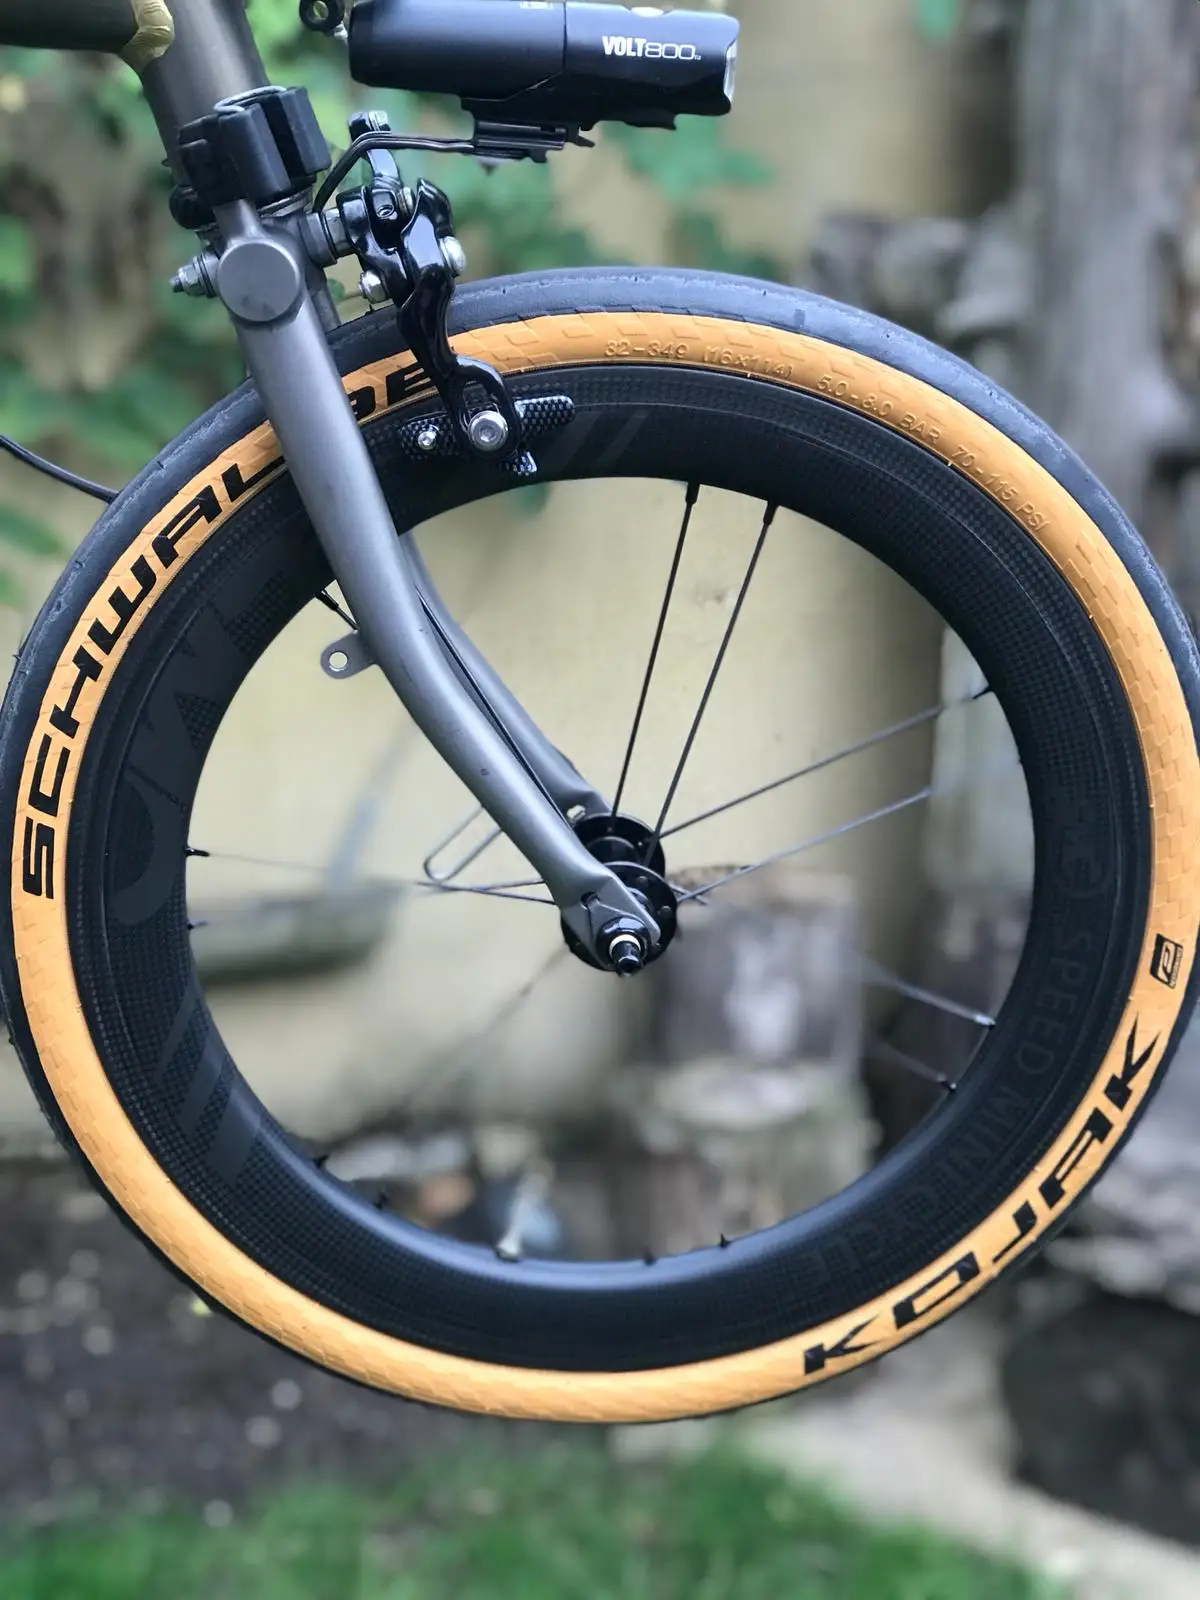 SMC 1" углеродное колесо 74 мм Hubsmith концентратор 6 скоростей Brompton EZO/TPI керамическое Brompton Велосипедное колесо электрические велосипеды скоростной мини цикл